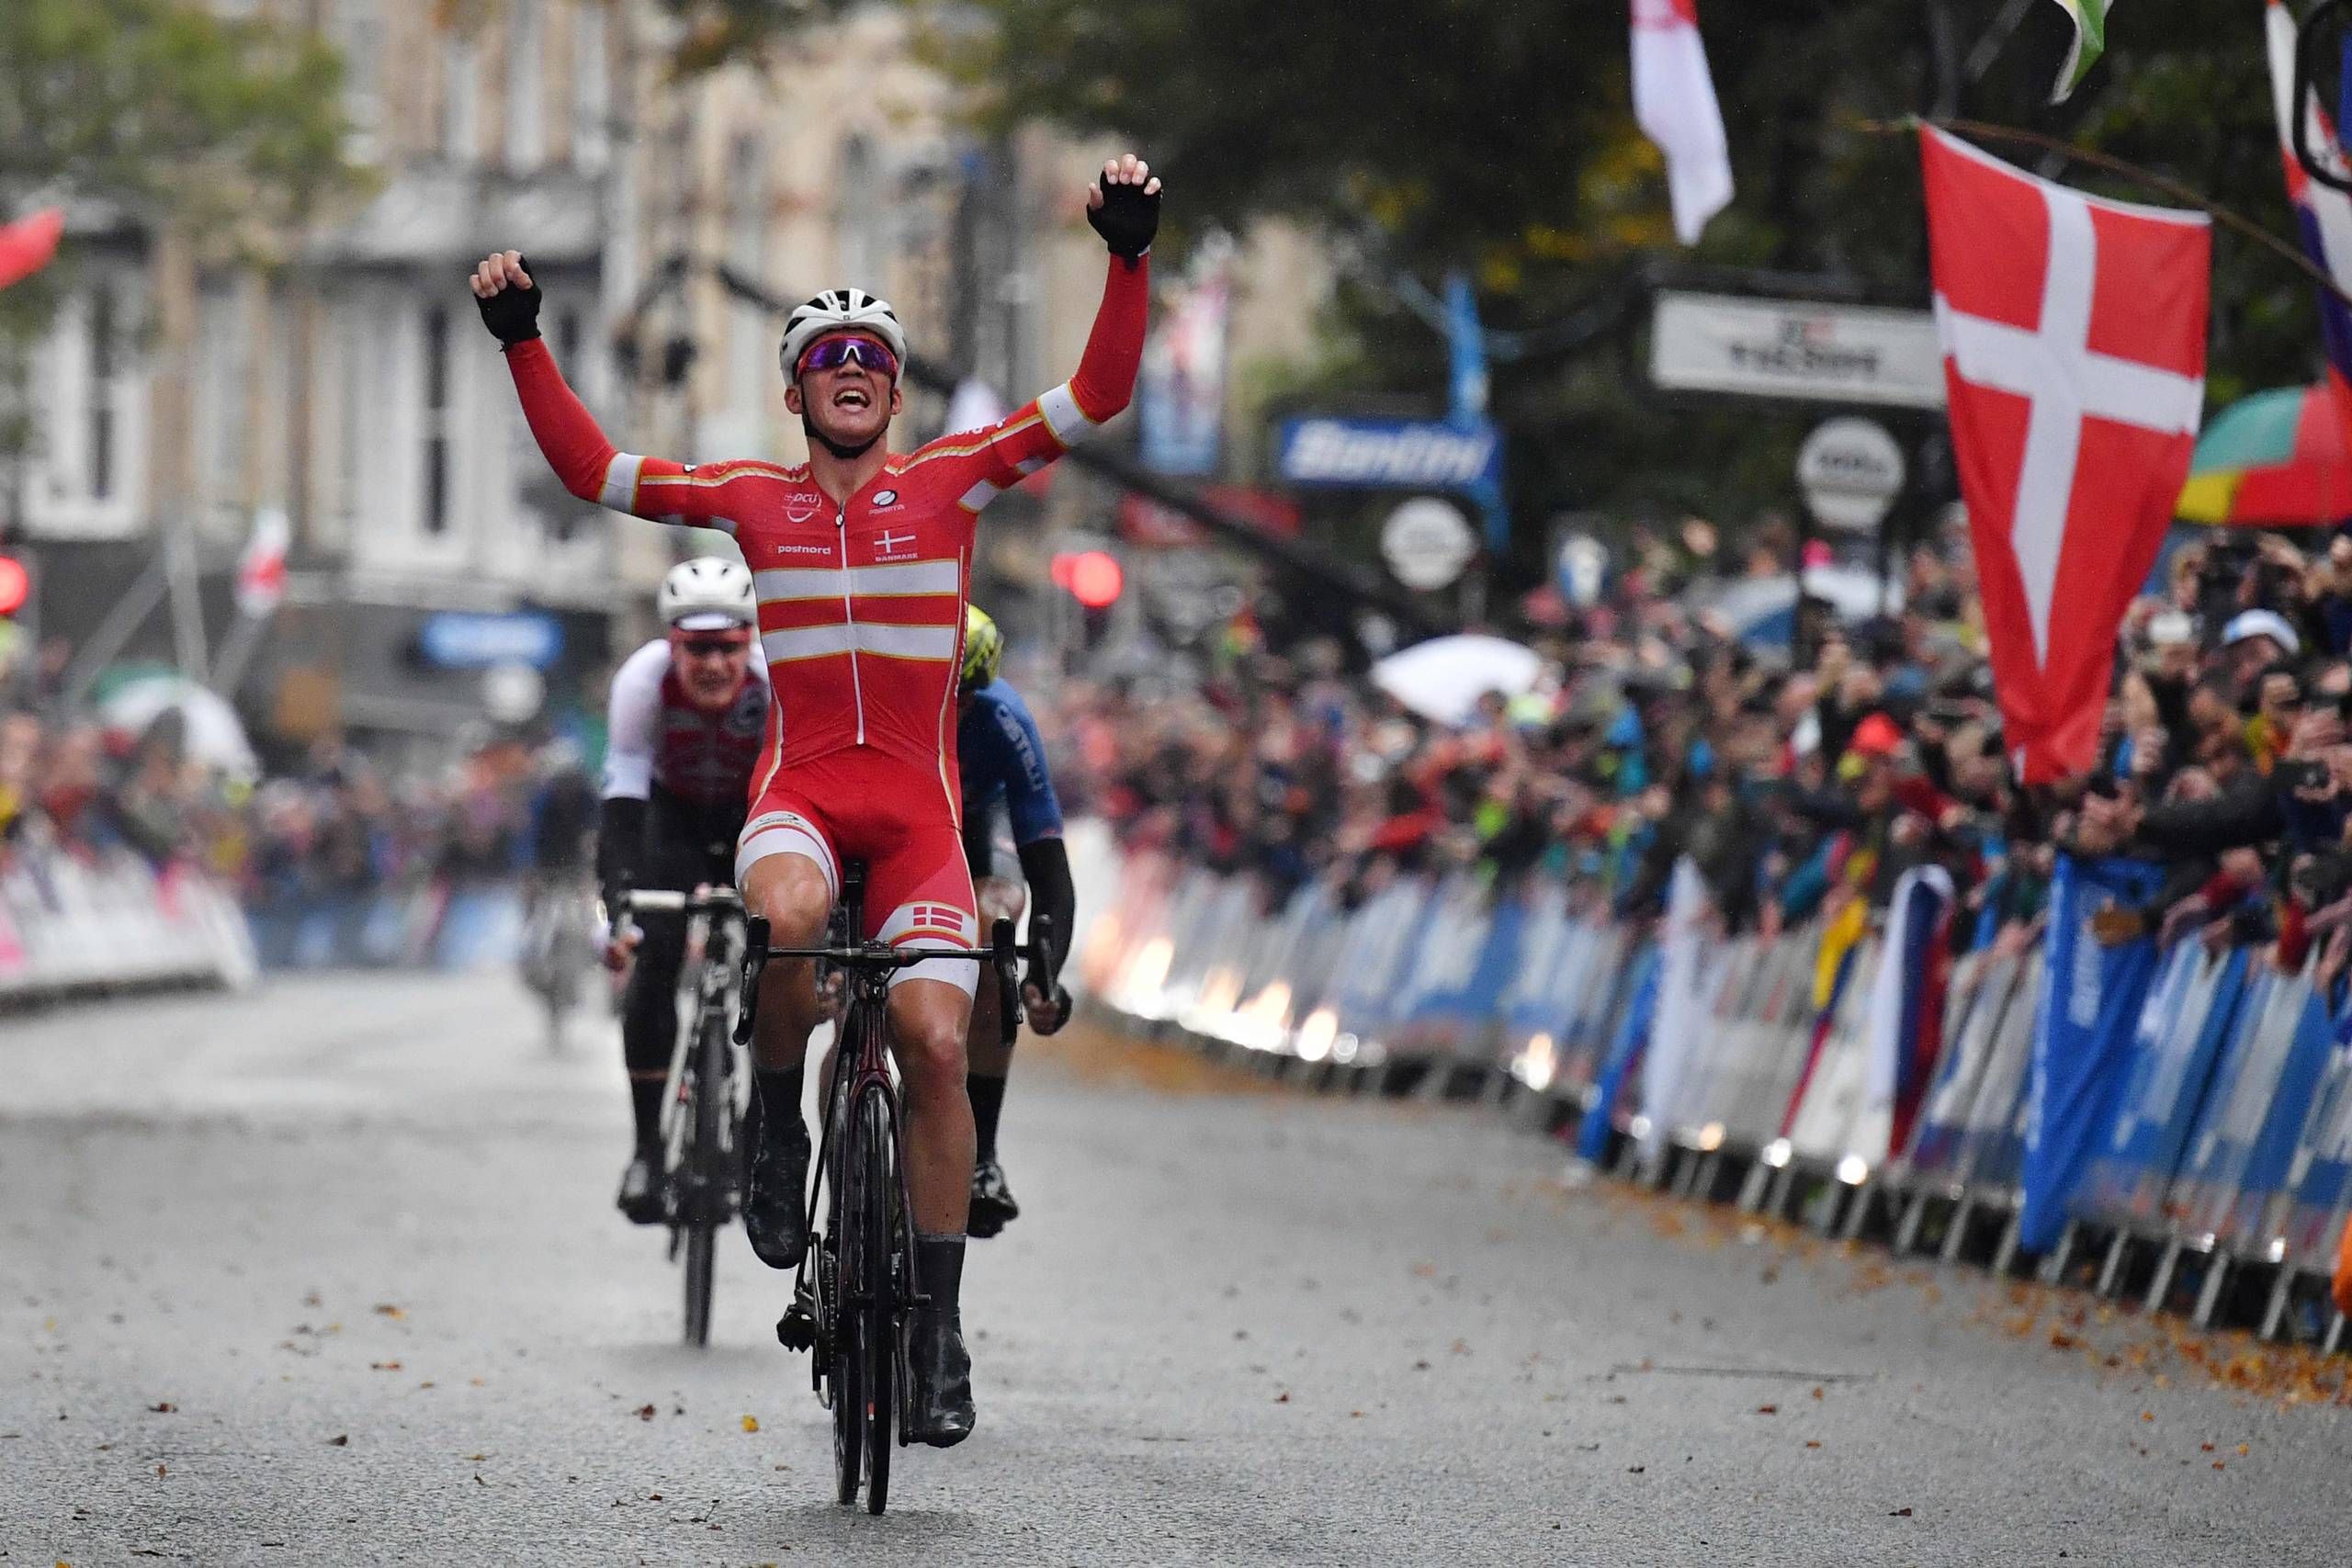 Første danske triumf Mads vandt VM i cykling